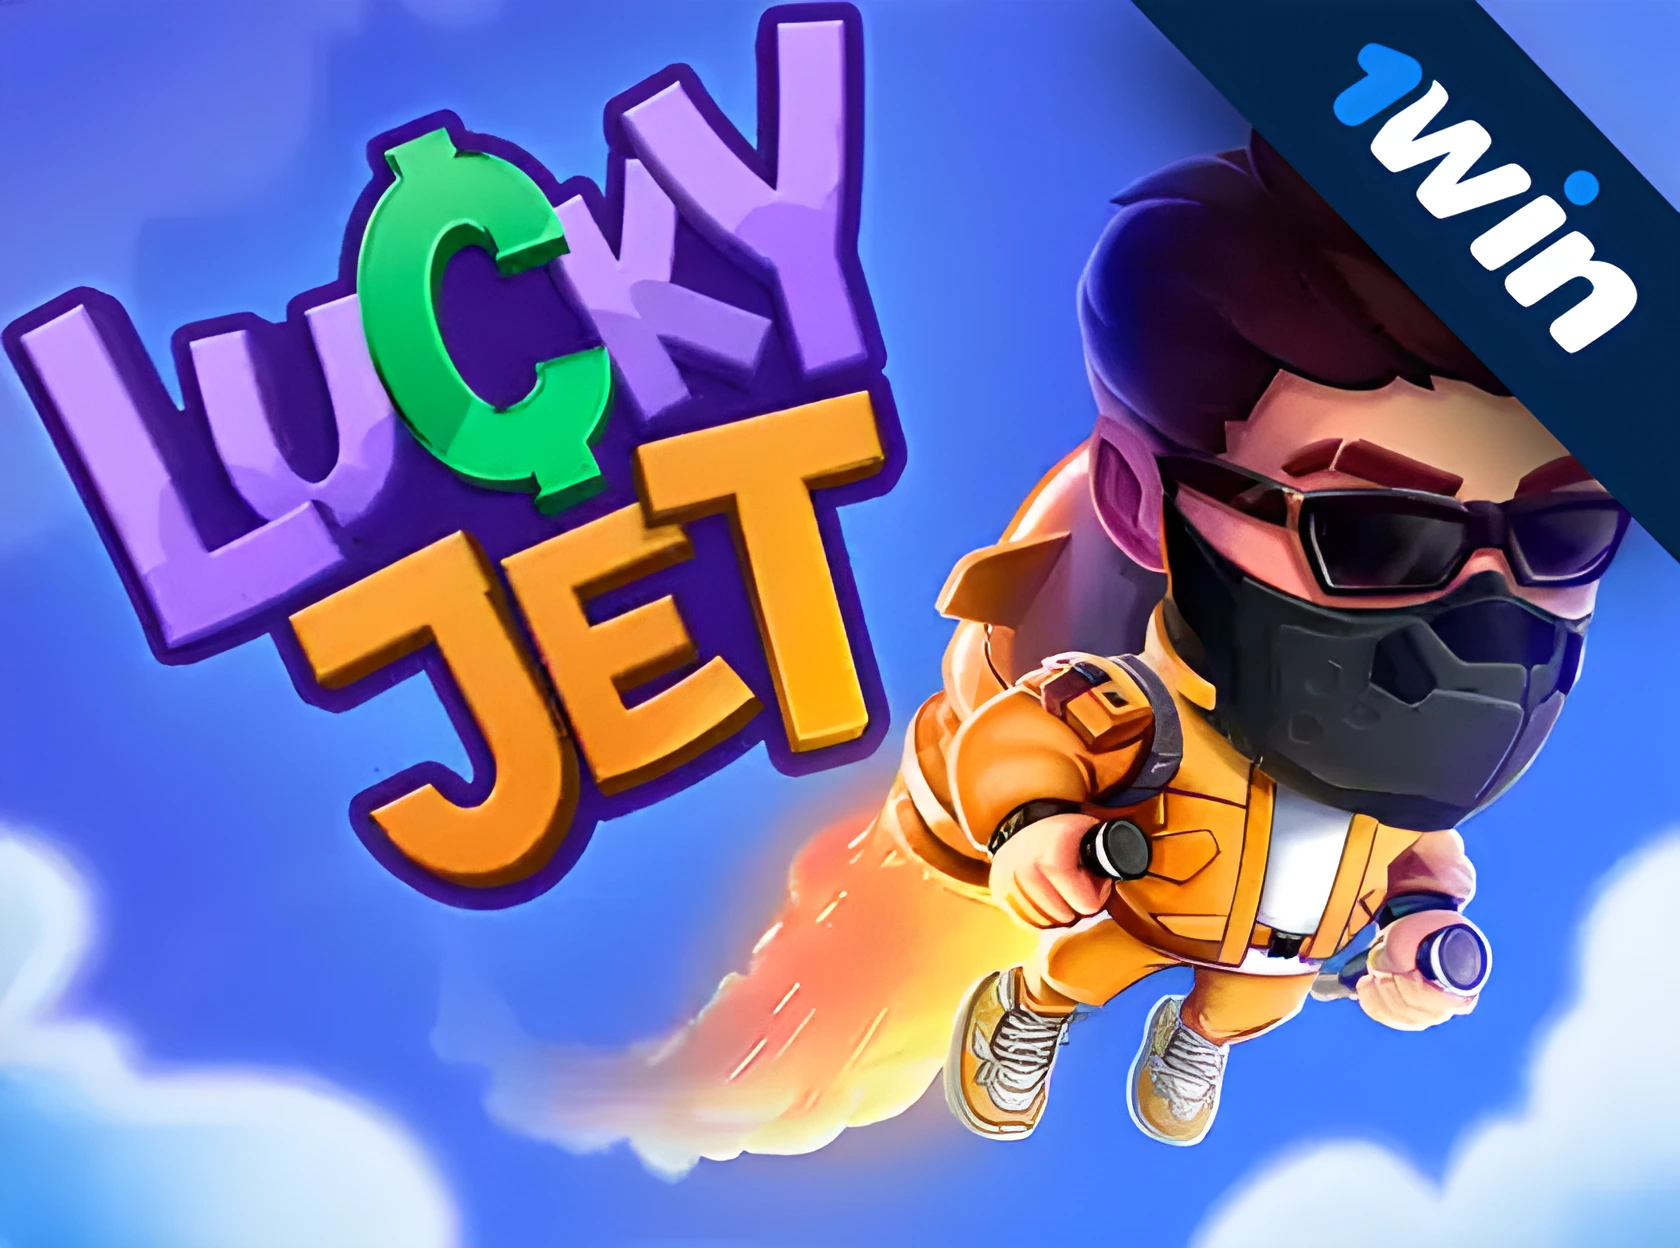 Lucky Jet - 1 win рдбрд╛рдЙрдирд▓реЛрдб рдХрд░реЗрдВ